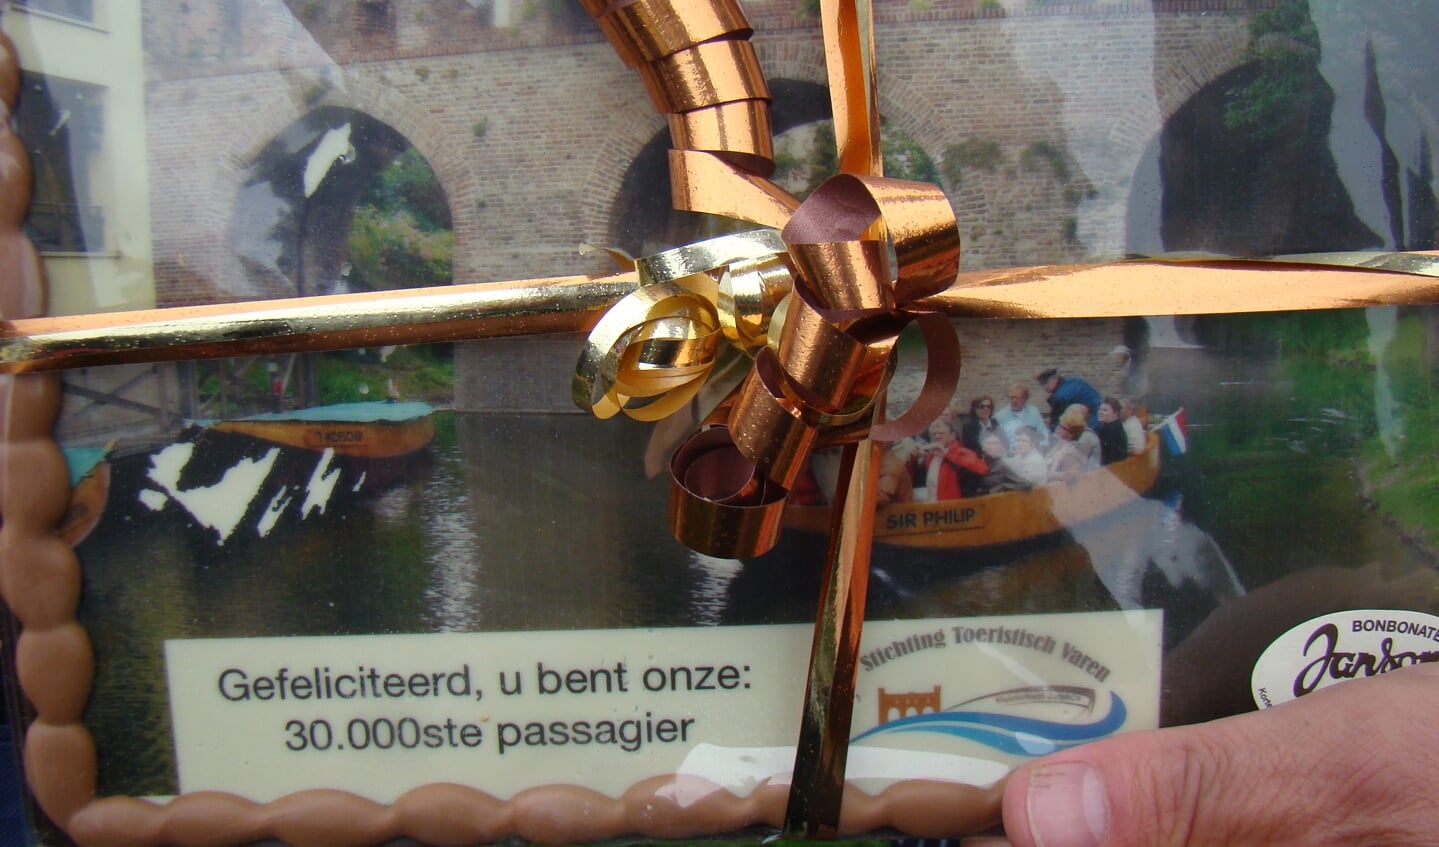 Het cadeau is een in chocolade uitgevoerde scene met fluisterboot en Berkelpoort. Foto: Mevrouw Eibrink is de 30.000ste passagier in 2019 en wordt feestelijk begroet door voorzitter Bouwhuis. Foto: Geert Joosten